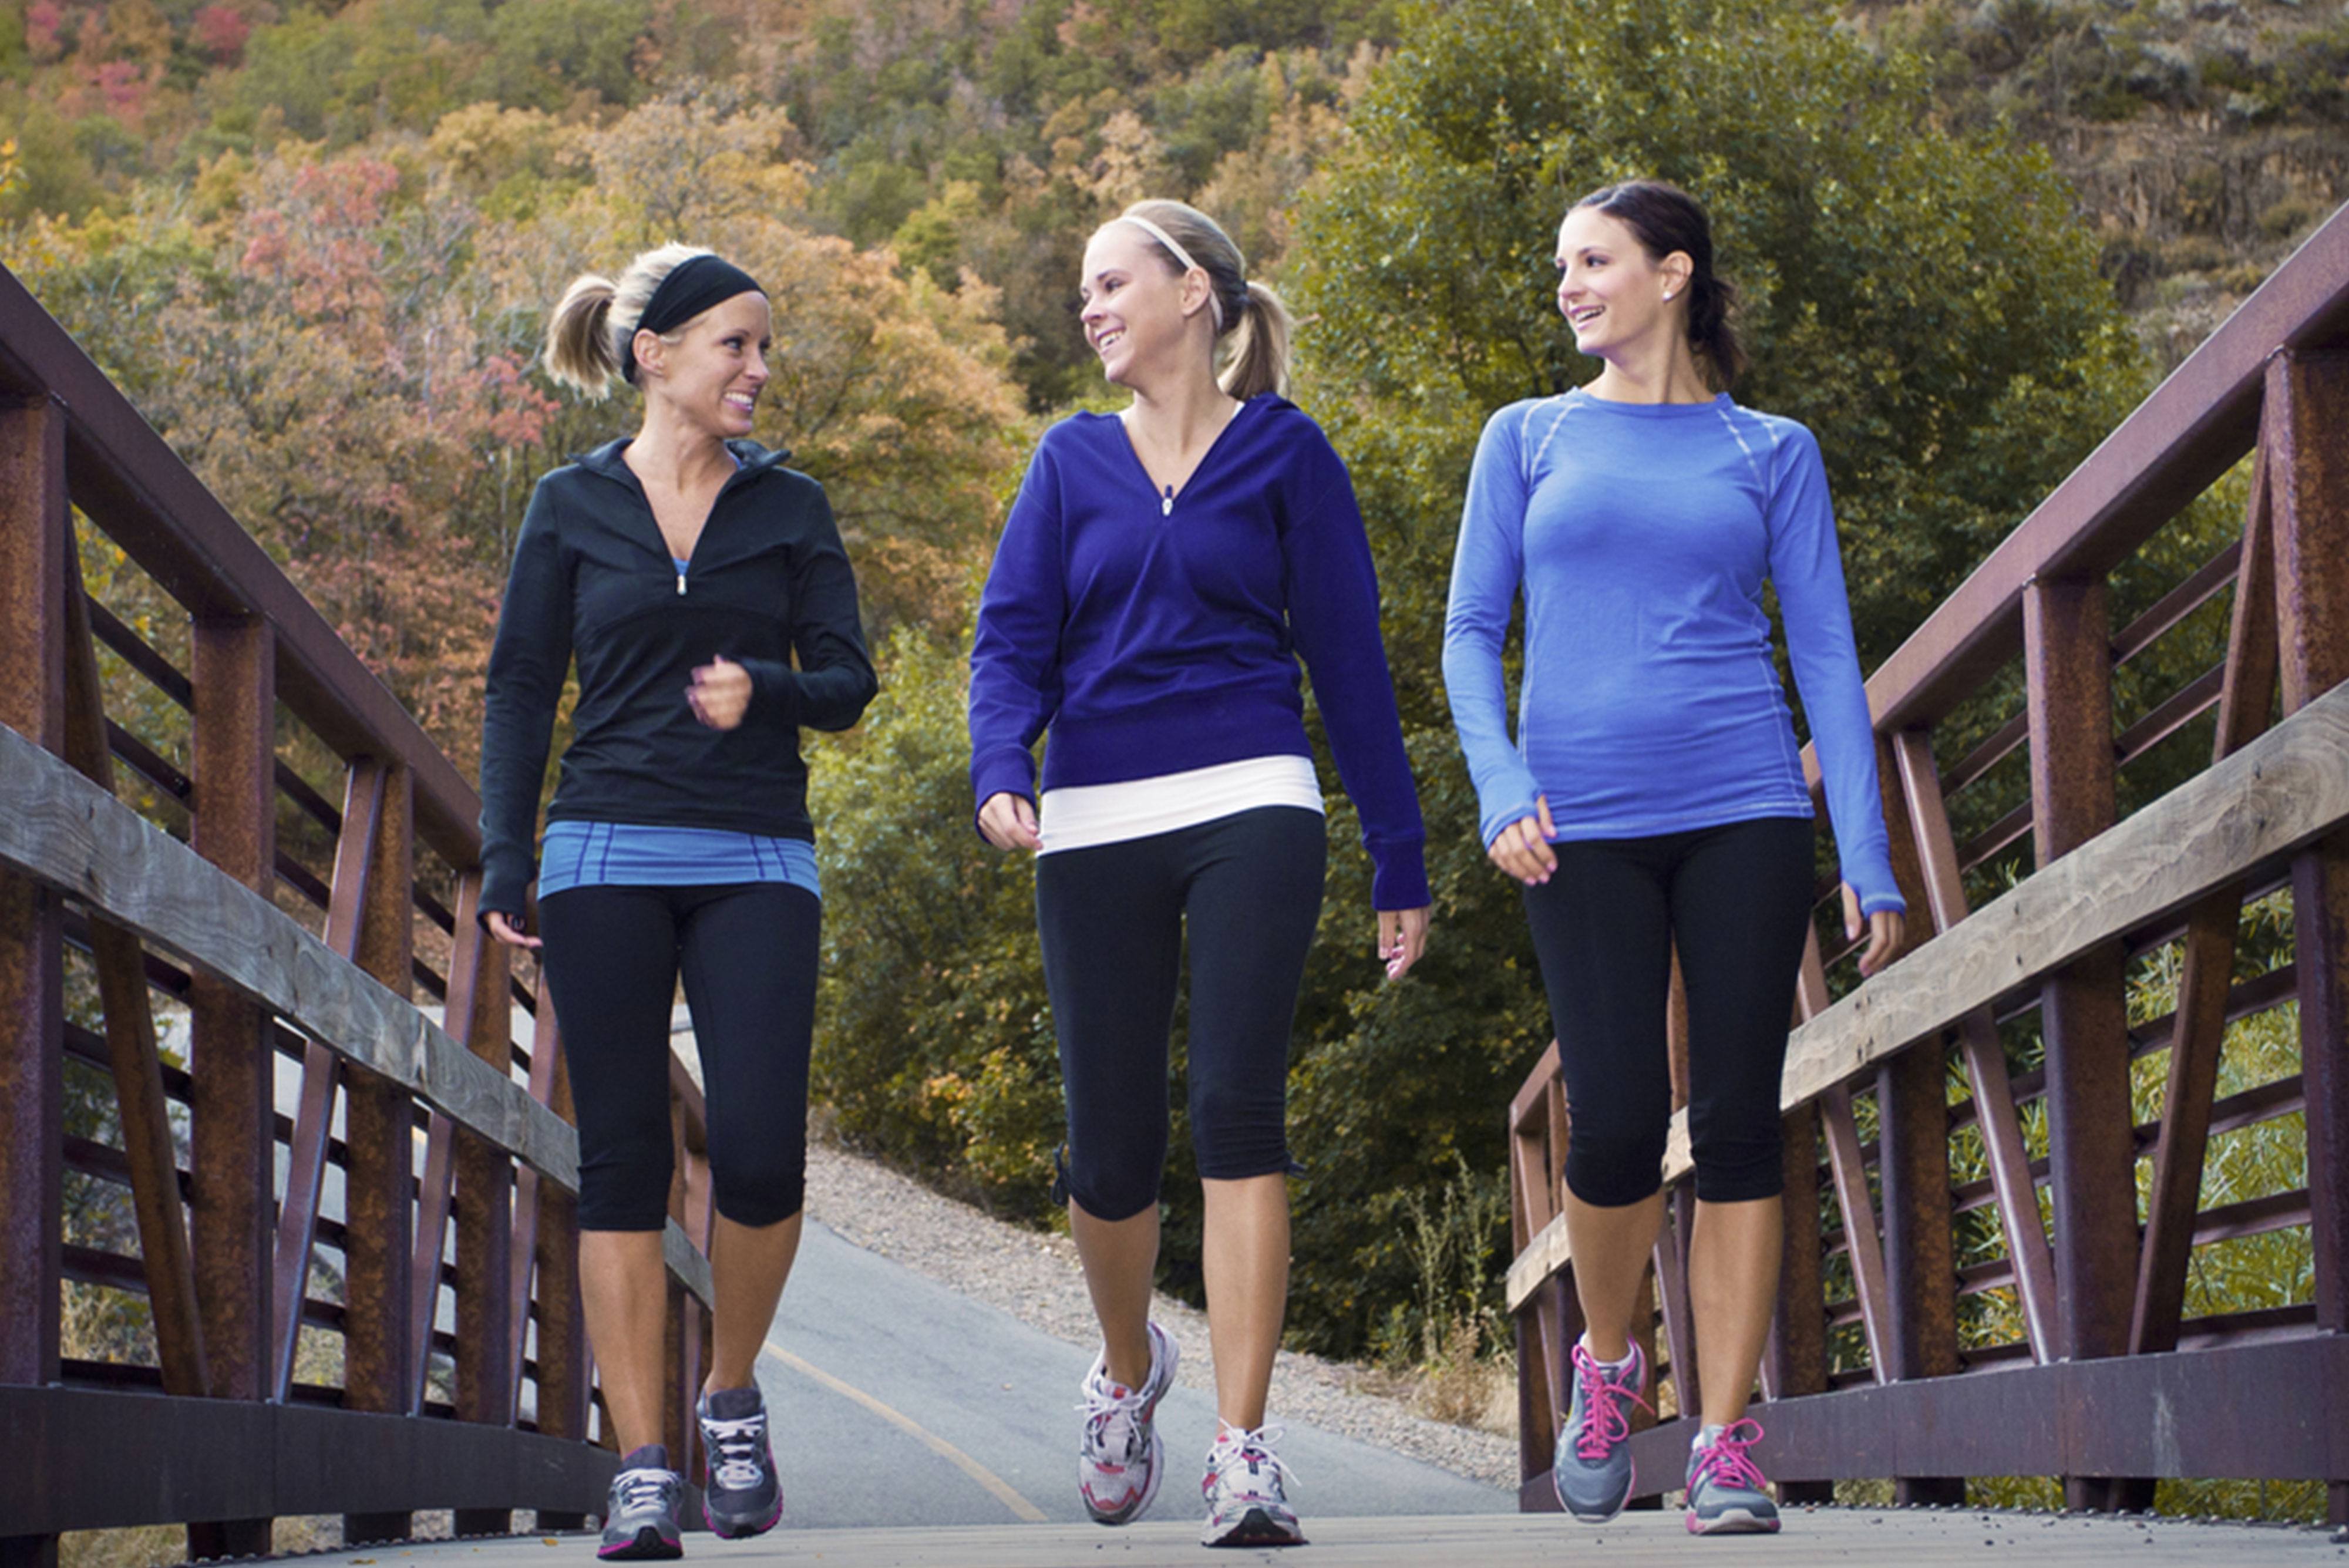 3 women walking across a bridge on a jog